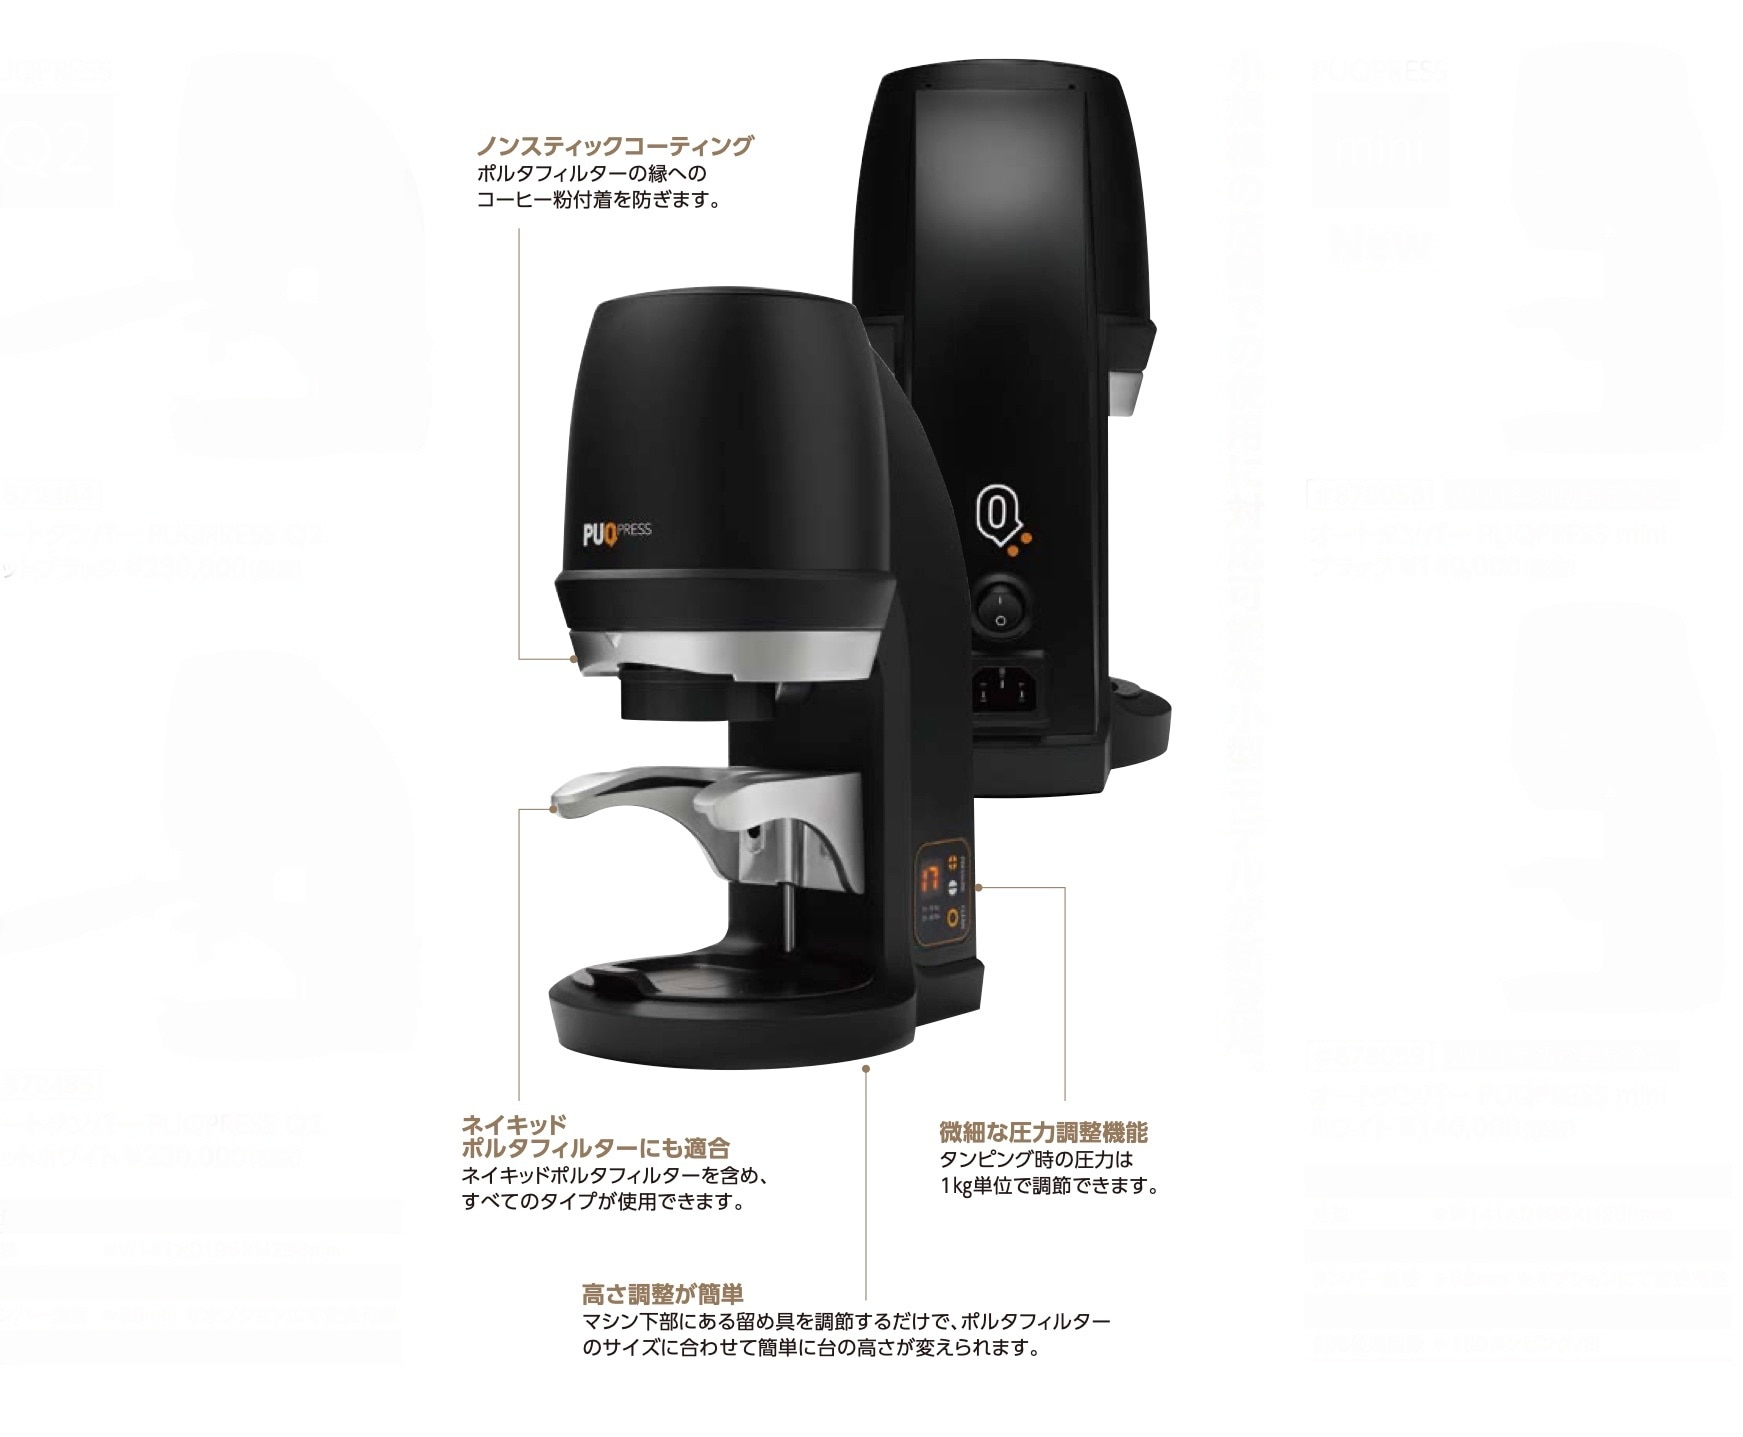 工場直送 コーヒー用品 珈琲器具のFaCoffeePUQ PRESS オートタンパー Q2